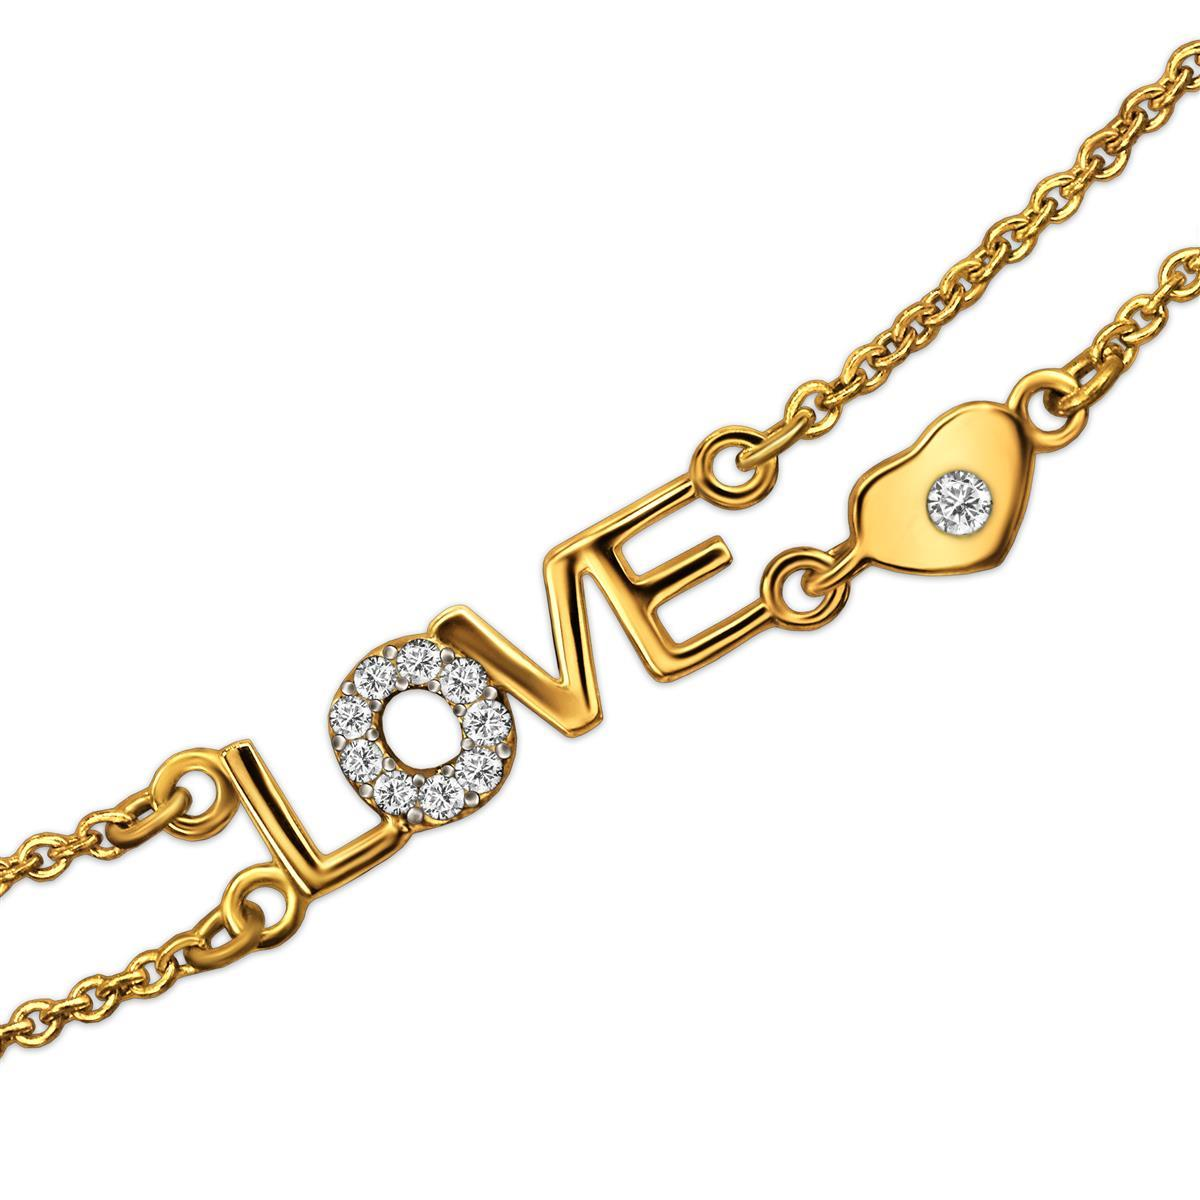 Goldenes Damen Armband 19 cm elegant mit LOVE - Schriftzug 13 x 4 mm und kleinem Mini Herz 3 x 4 mm verziert mit vielen Zirkonias 333 GOLD 8 KARAT